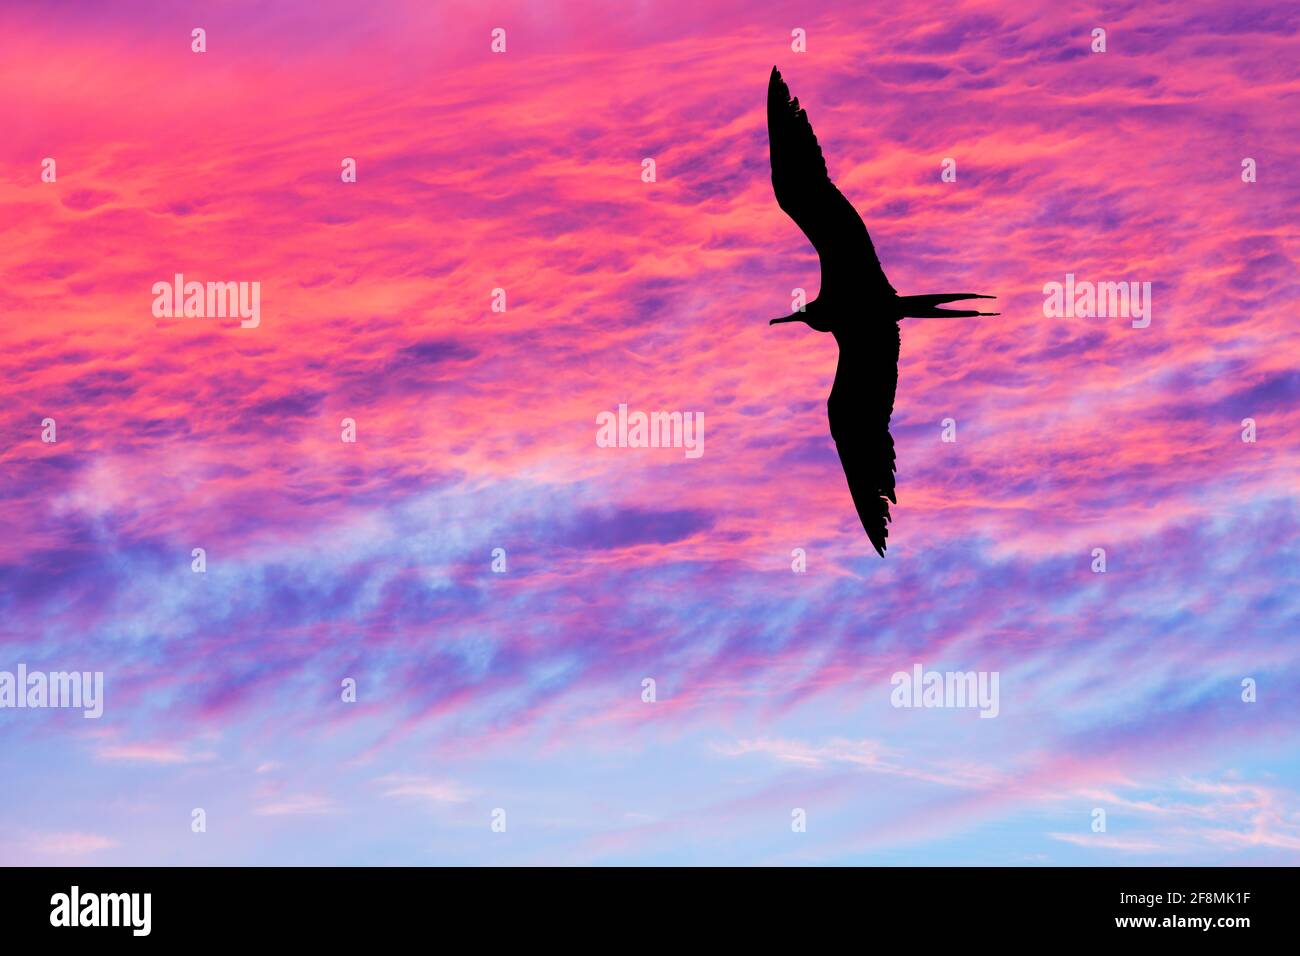 Ein einziger Vogel fliegt mit Flügeln, die sich in Silhouetten ausbreiten Ein lebendiger, farbenfroher Sonnenuntergang am Himmel Stockfoto